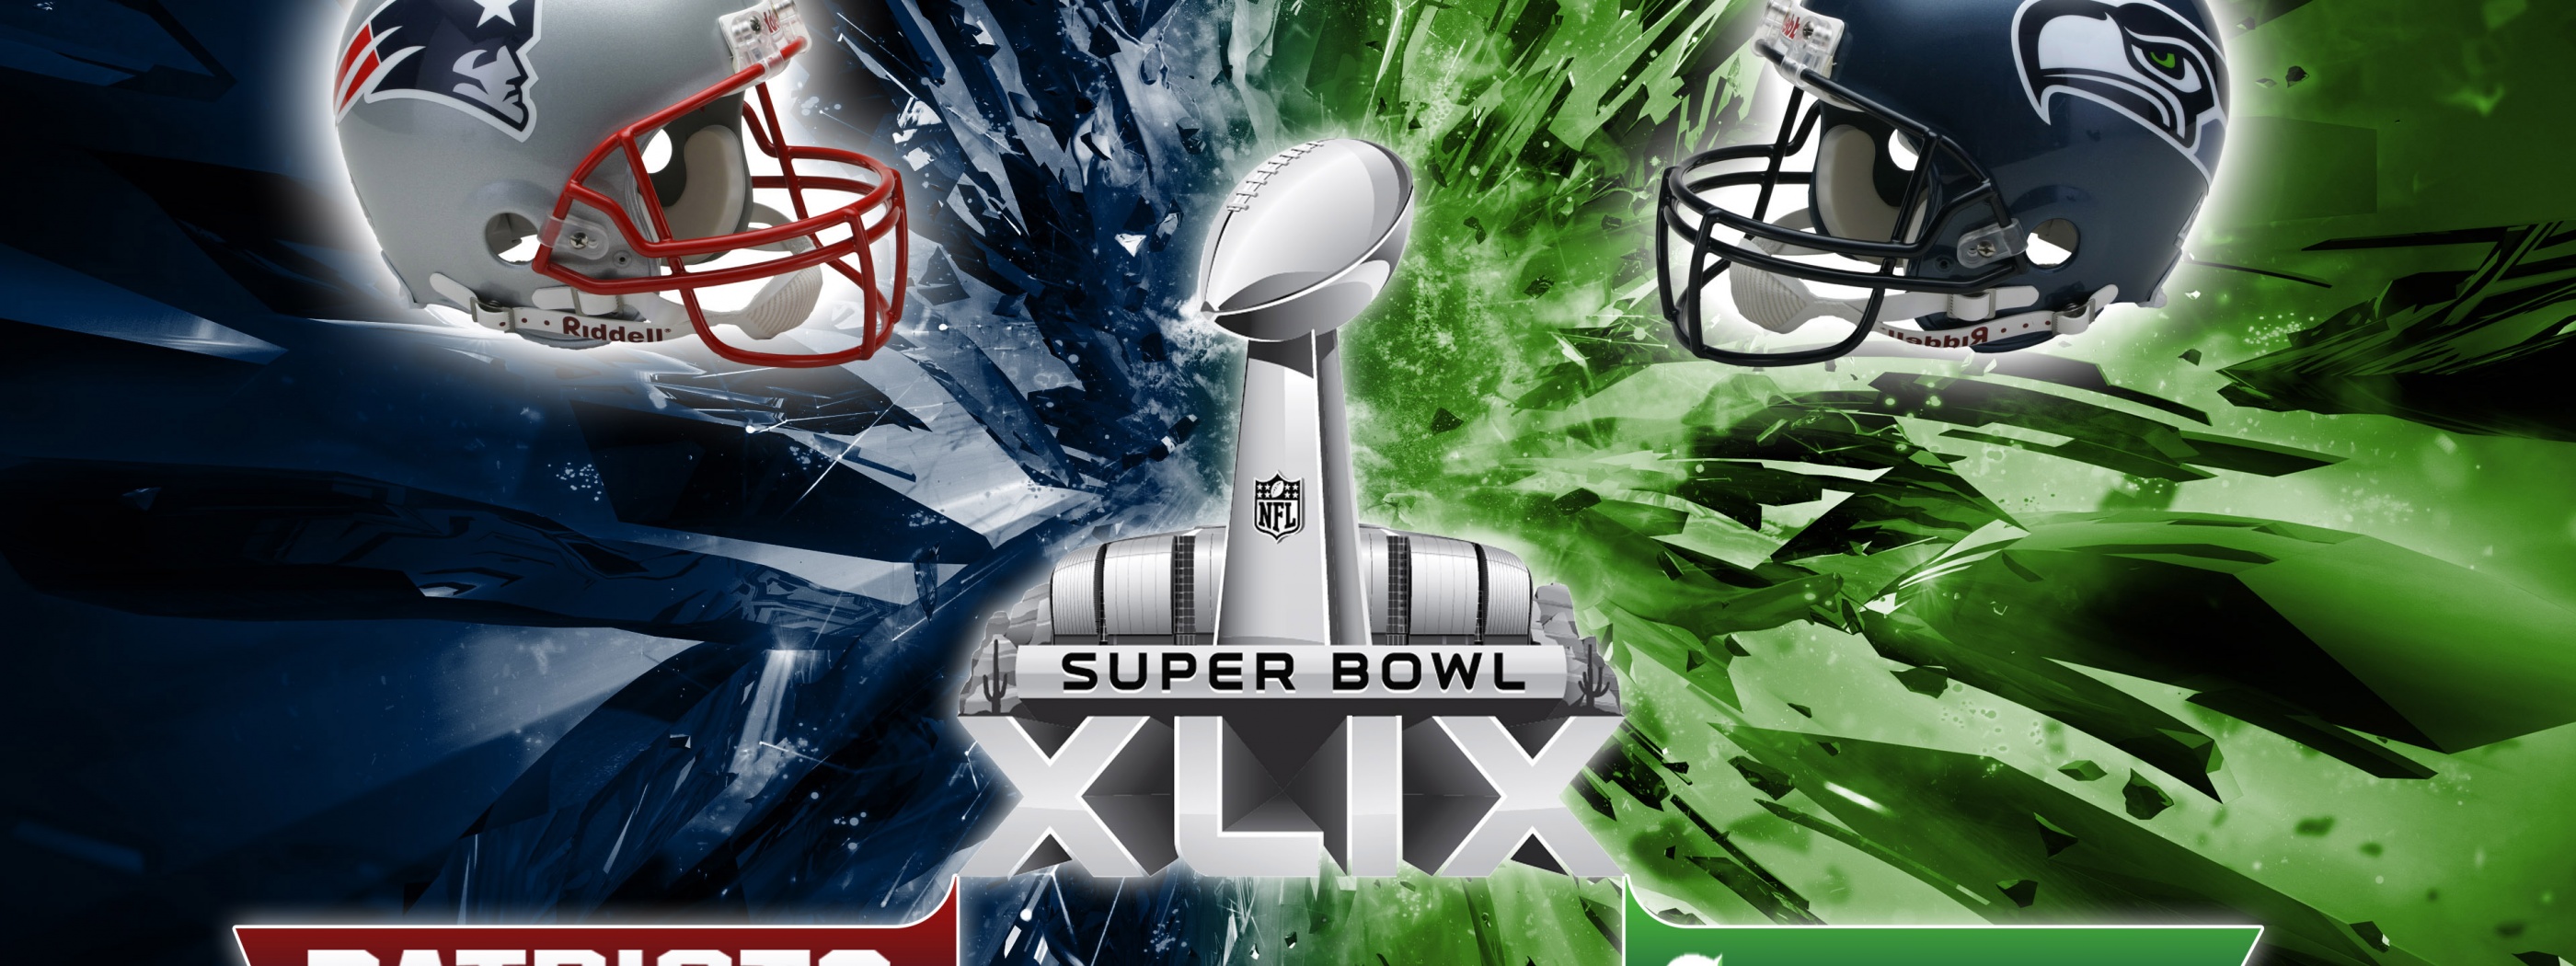 Pats Vs Hawks 49 Super Bowl 2015